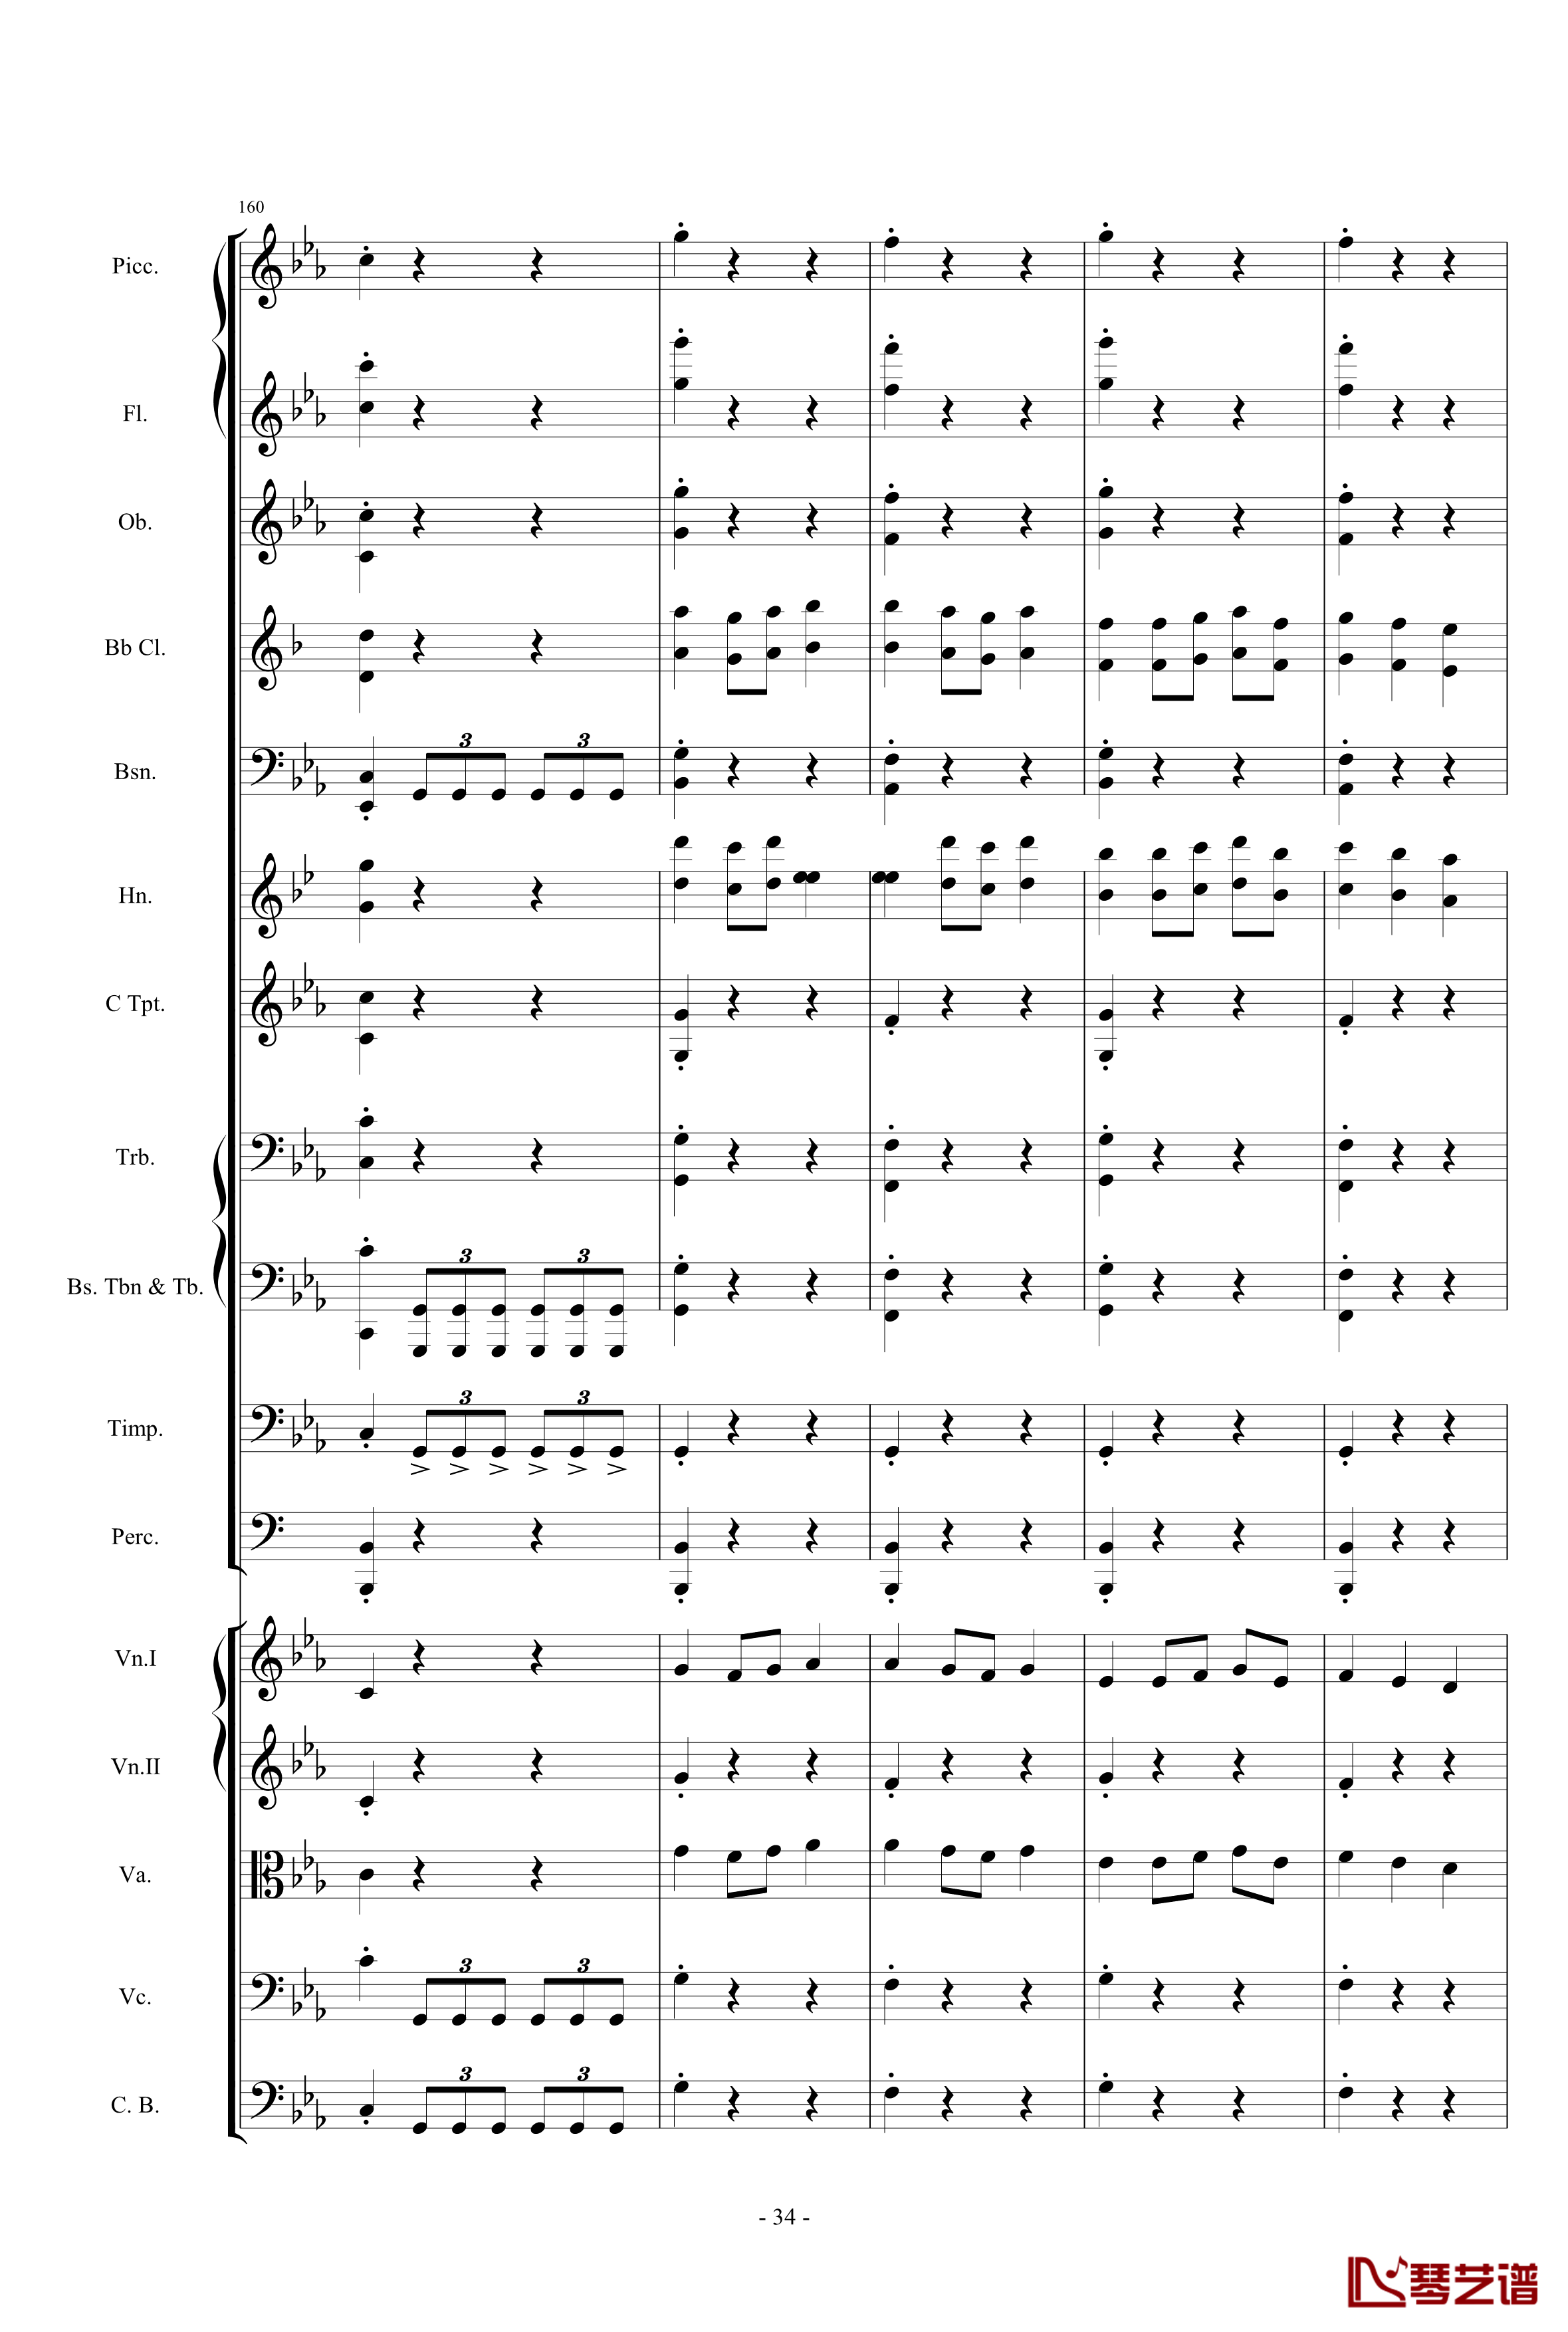 愤怒的小鸟交响曲第三乐章Op.5 no.3钢琴谱-1057257834